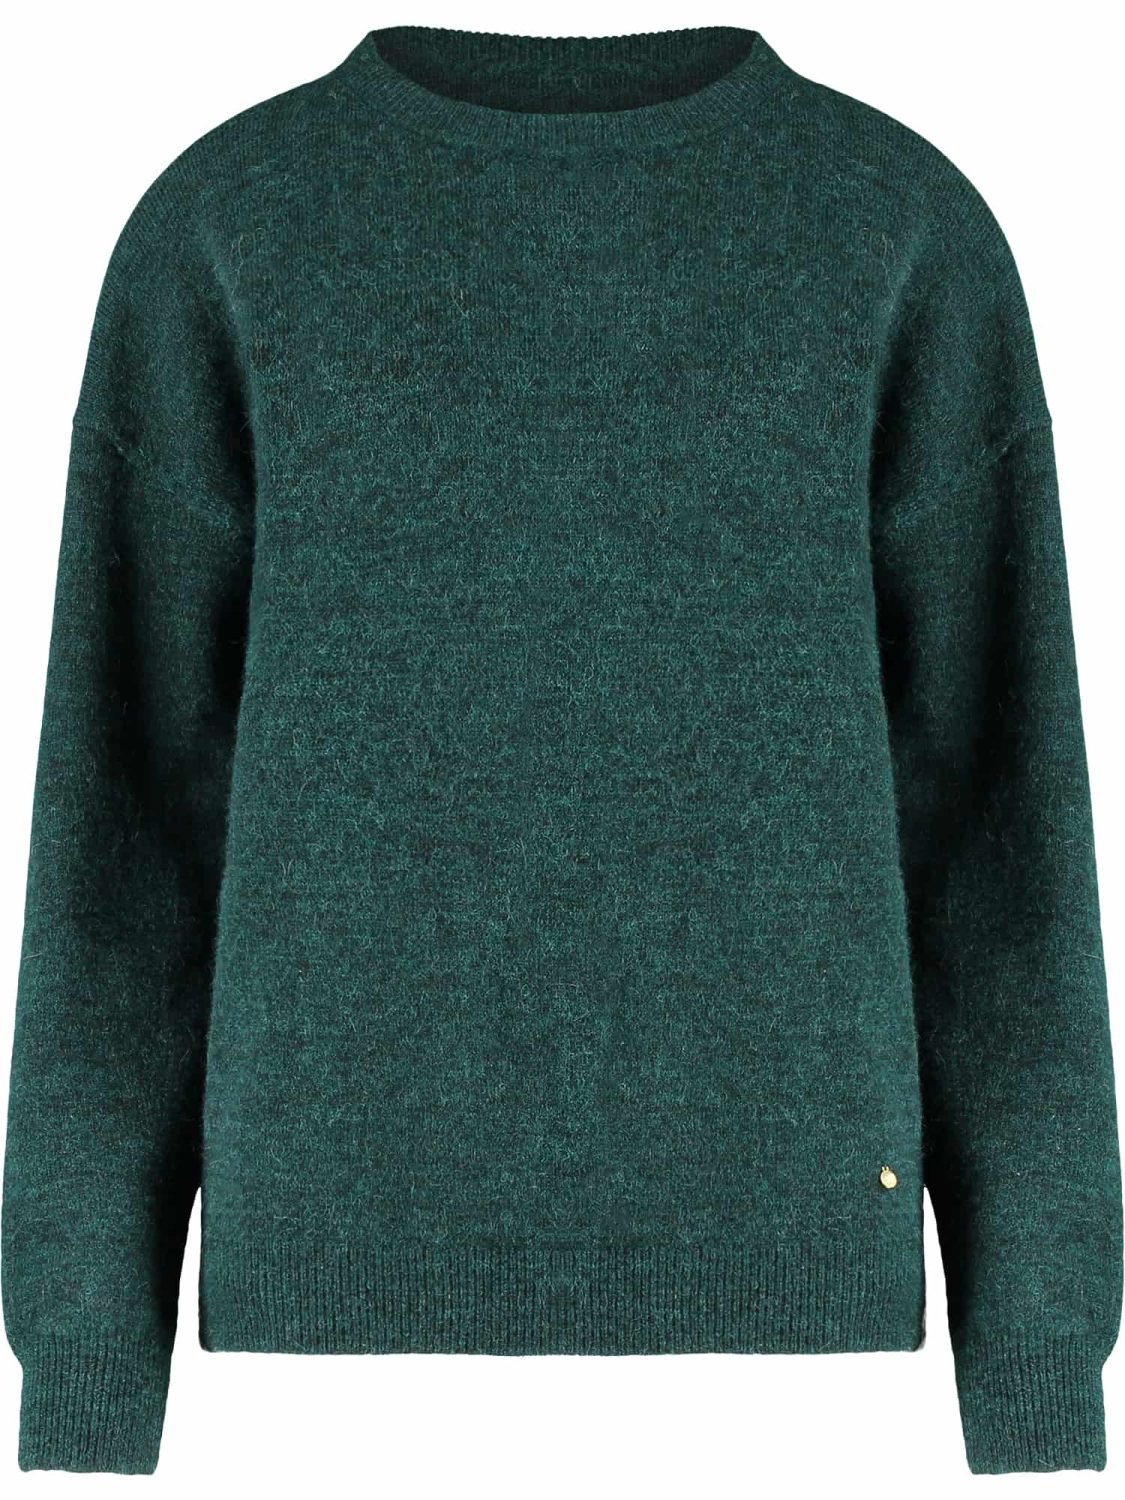 green sweater f